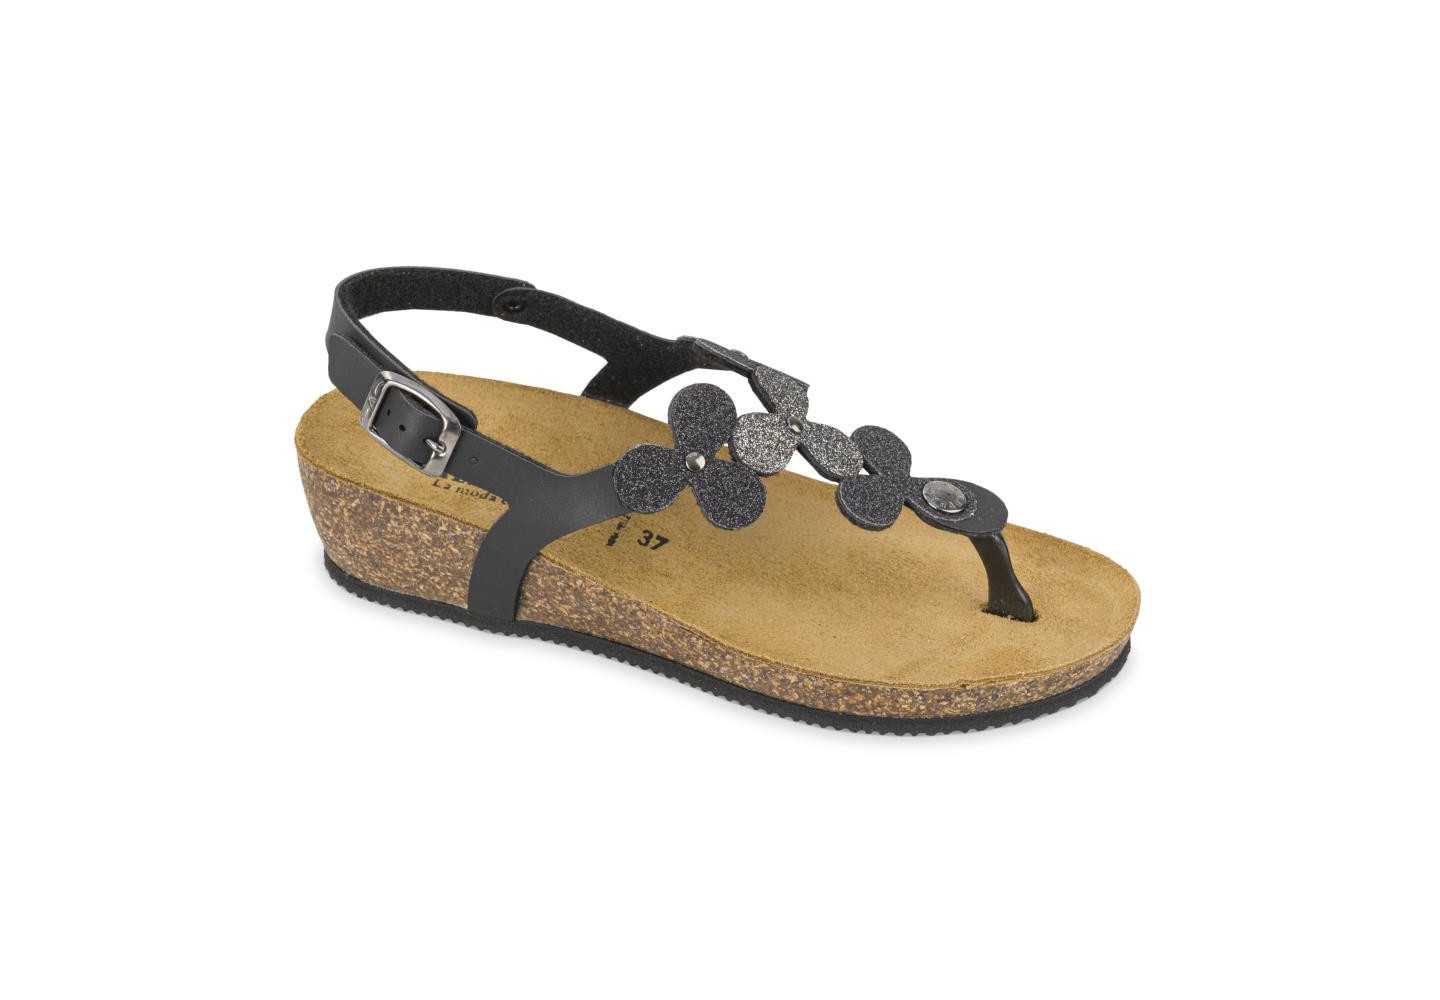 Sandalo da donna infradito con glitter Valleverde G51276 nero beige